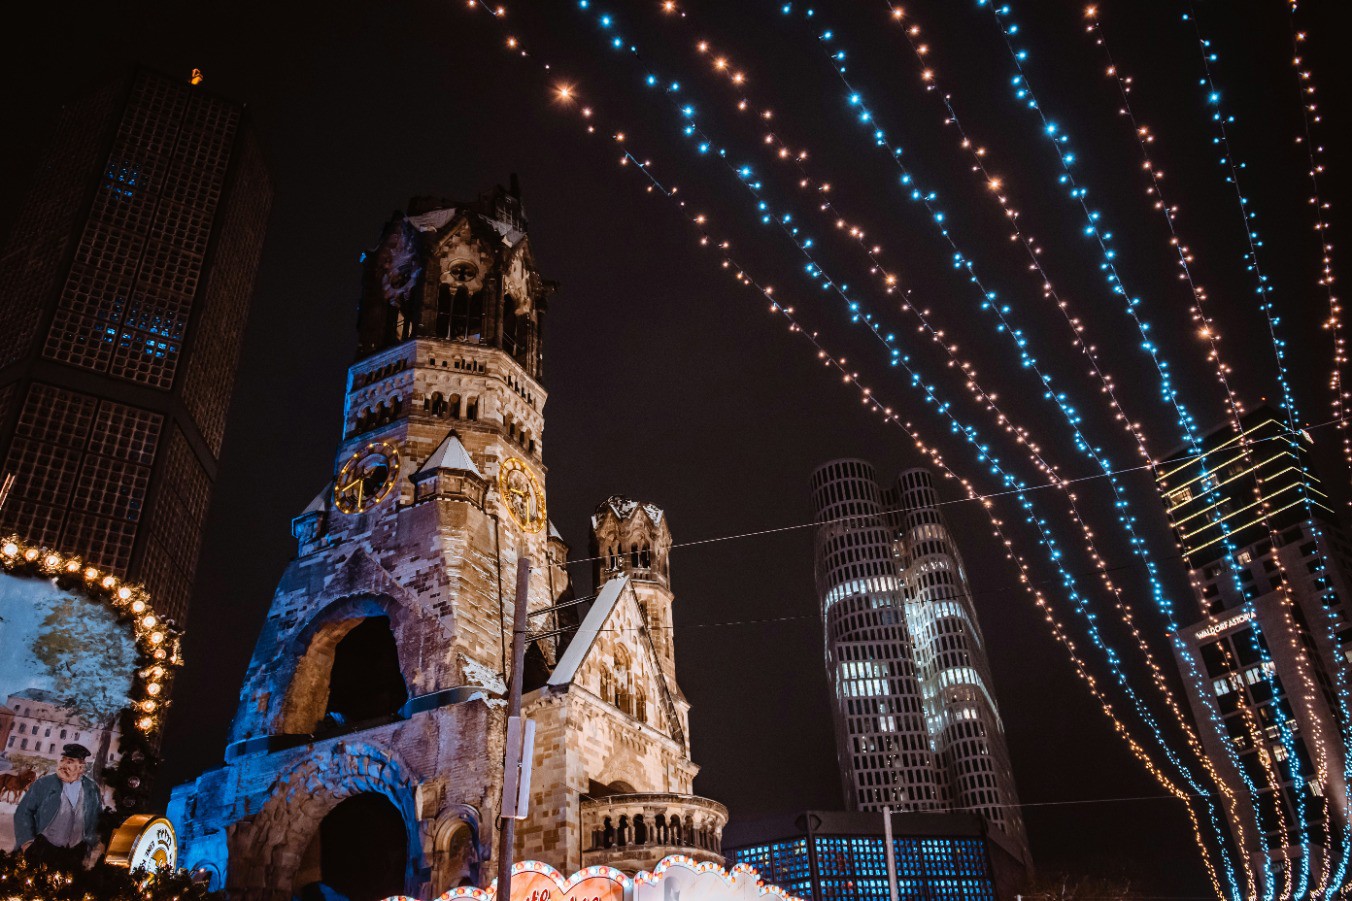 Julkväll med upplysta ljusslingor och Kaiser-Wilhelm-Gedächtniskirche i bakgrunden i Berlin, Tyskland.